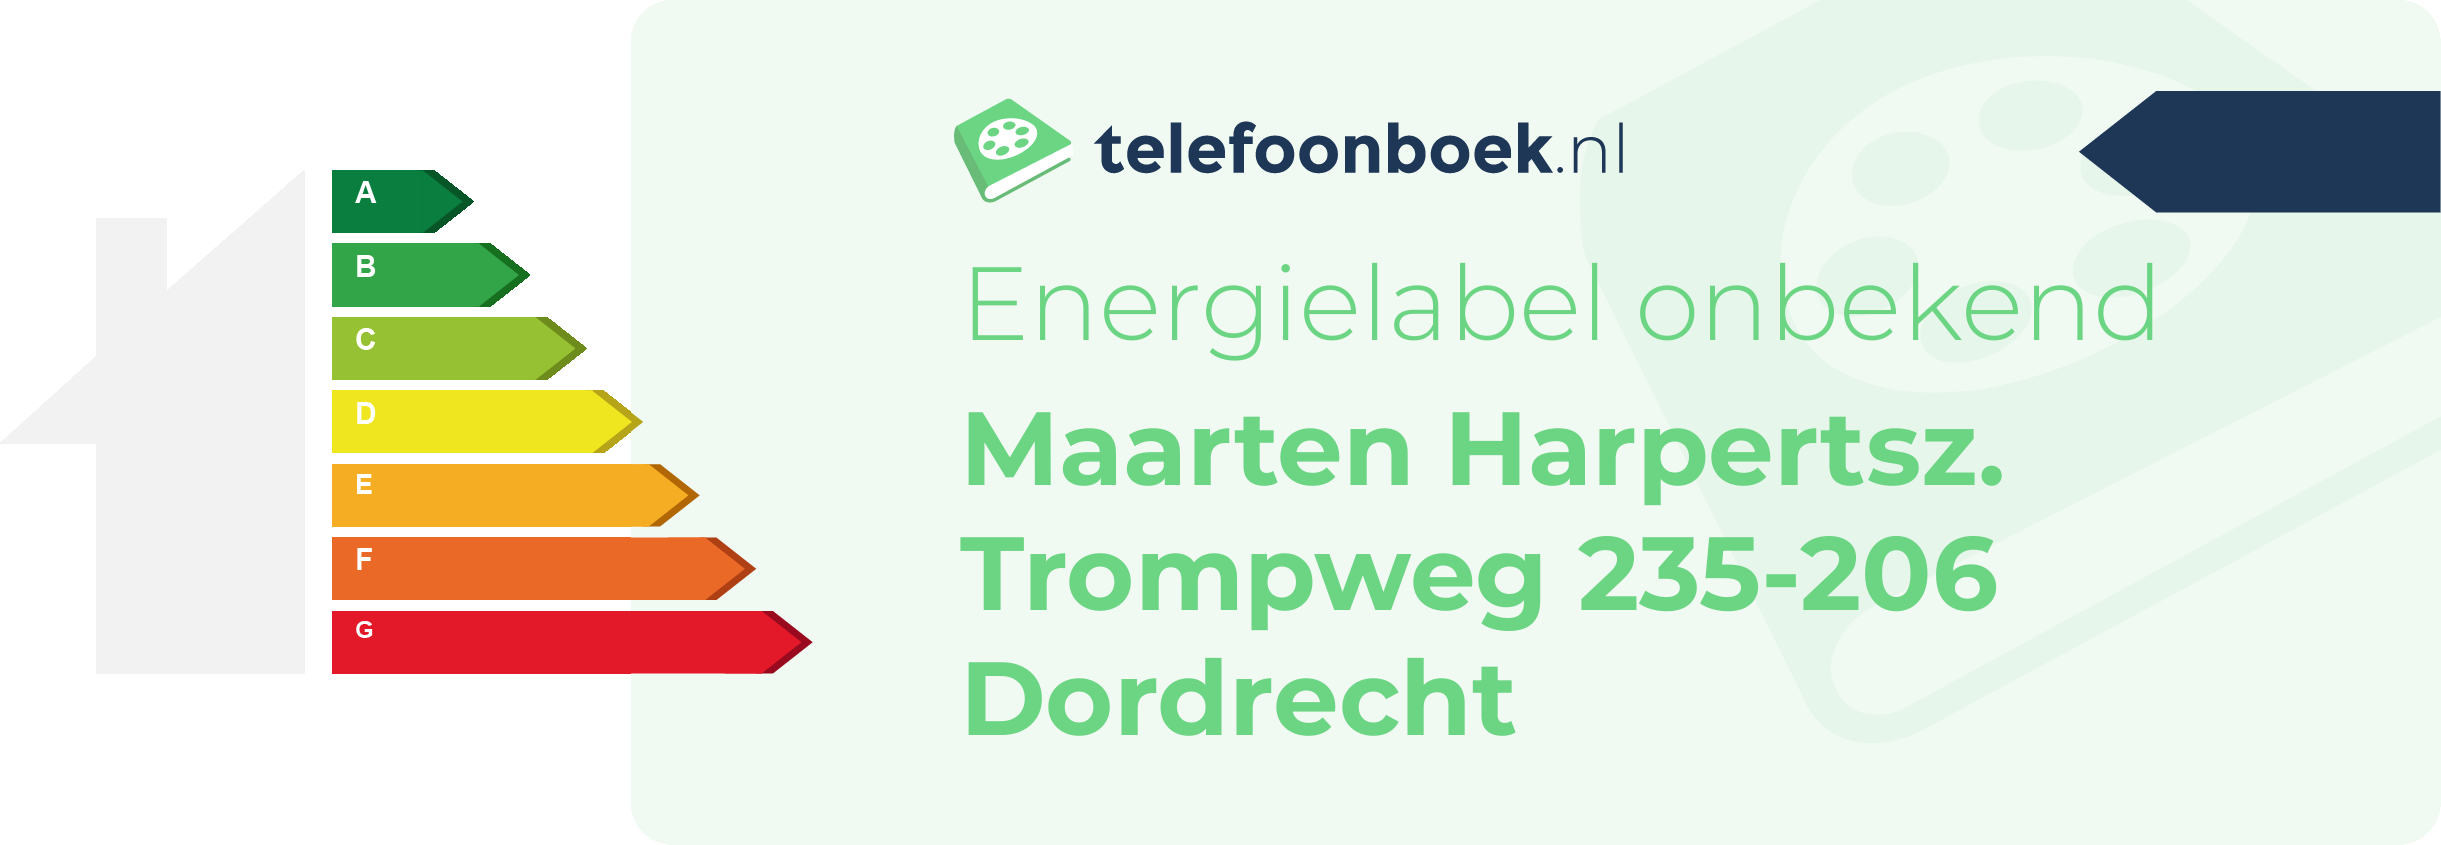 Energielabel Maarten Harpertsz. Trompweg 235-206 Dordrecht